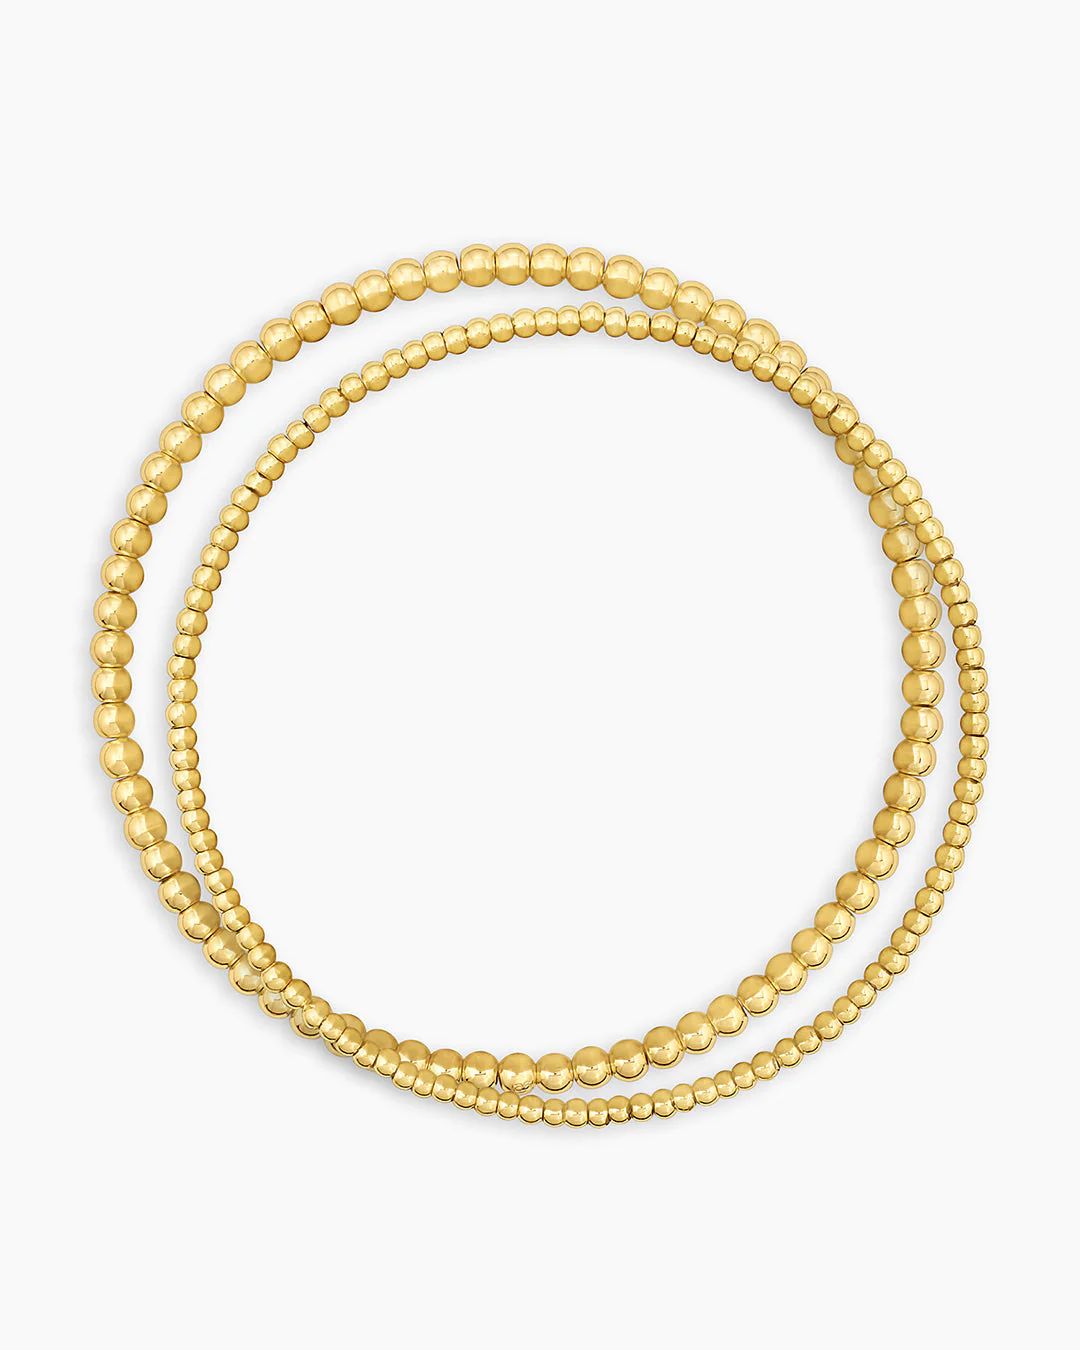 Poppy Gold Bracelet Set | gorjana